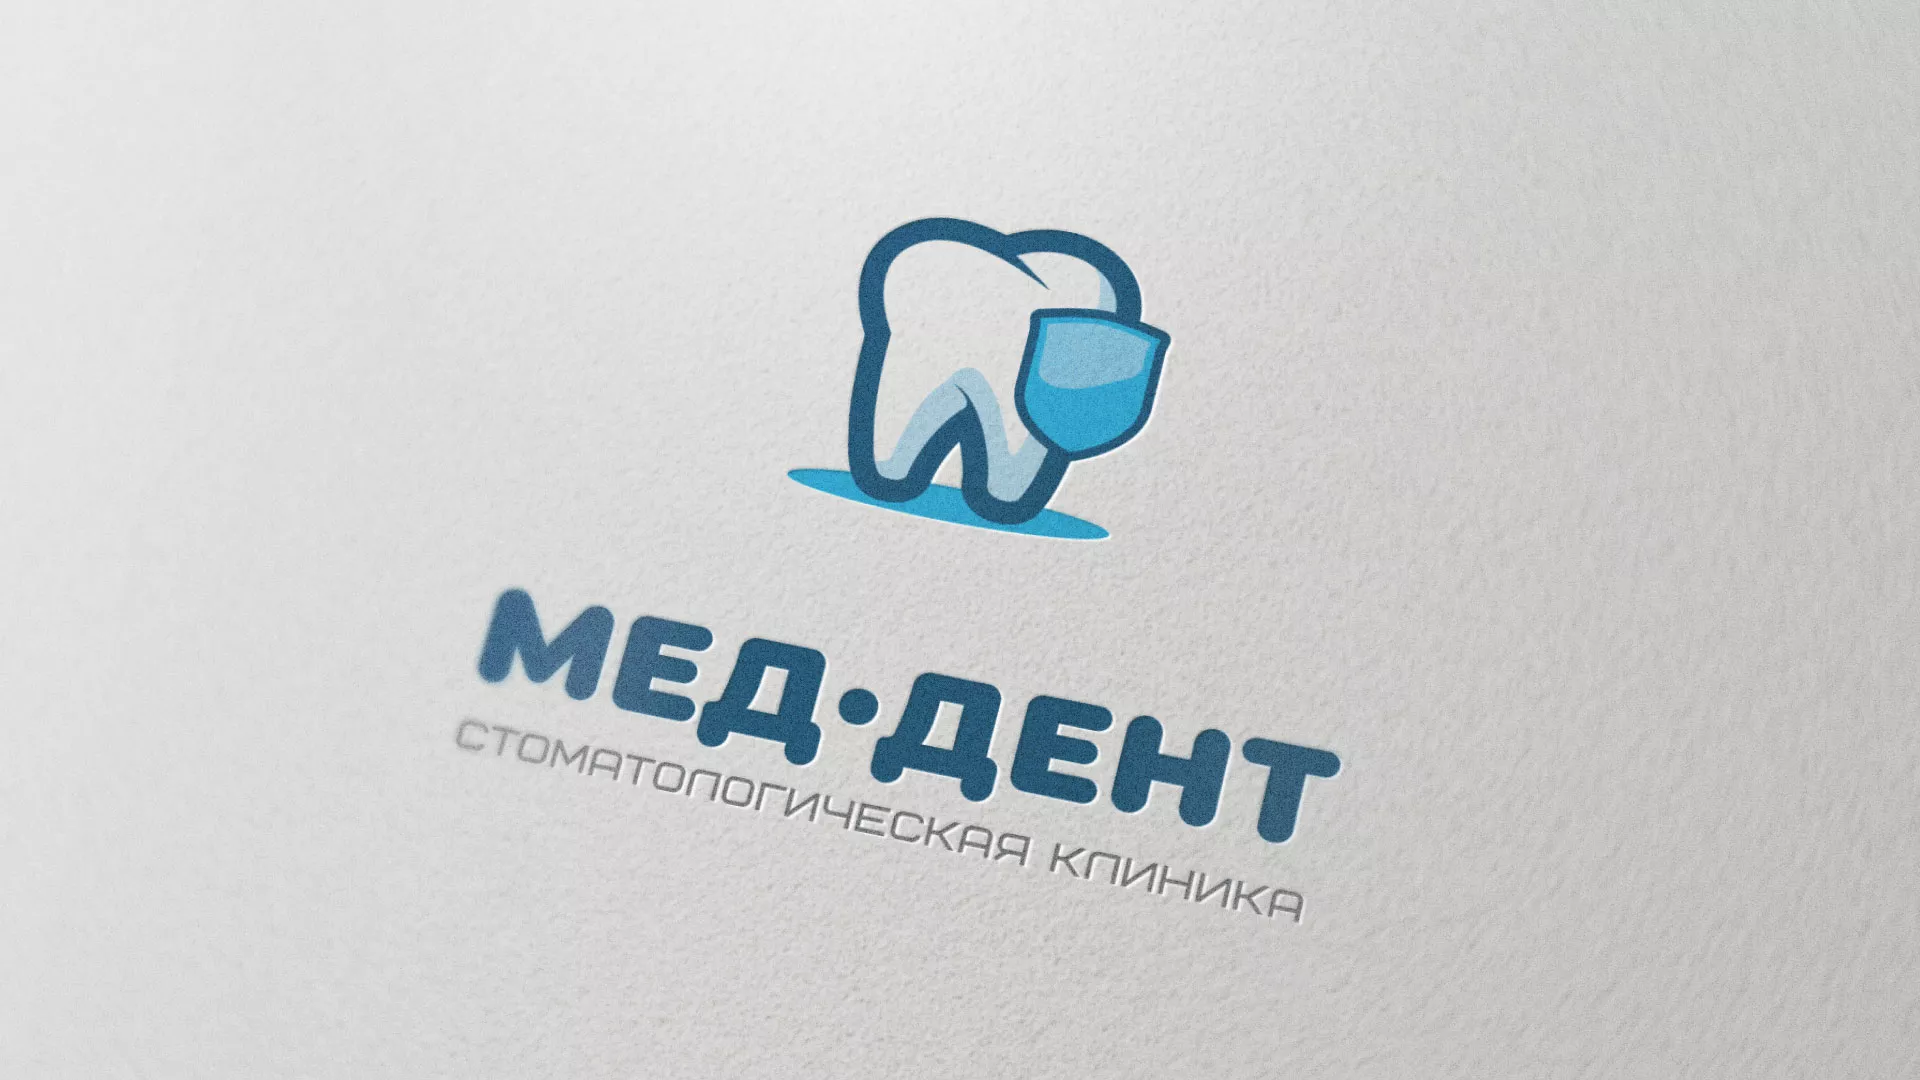 Разработка логотипа стоматологической клиники «МЕД-ДЕНТ» в Лосино-Петровске